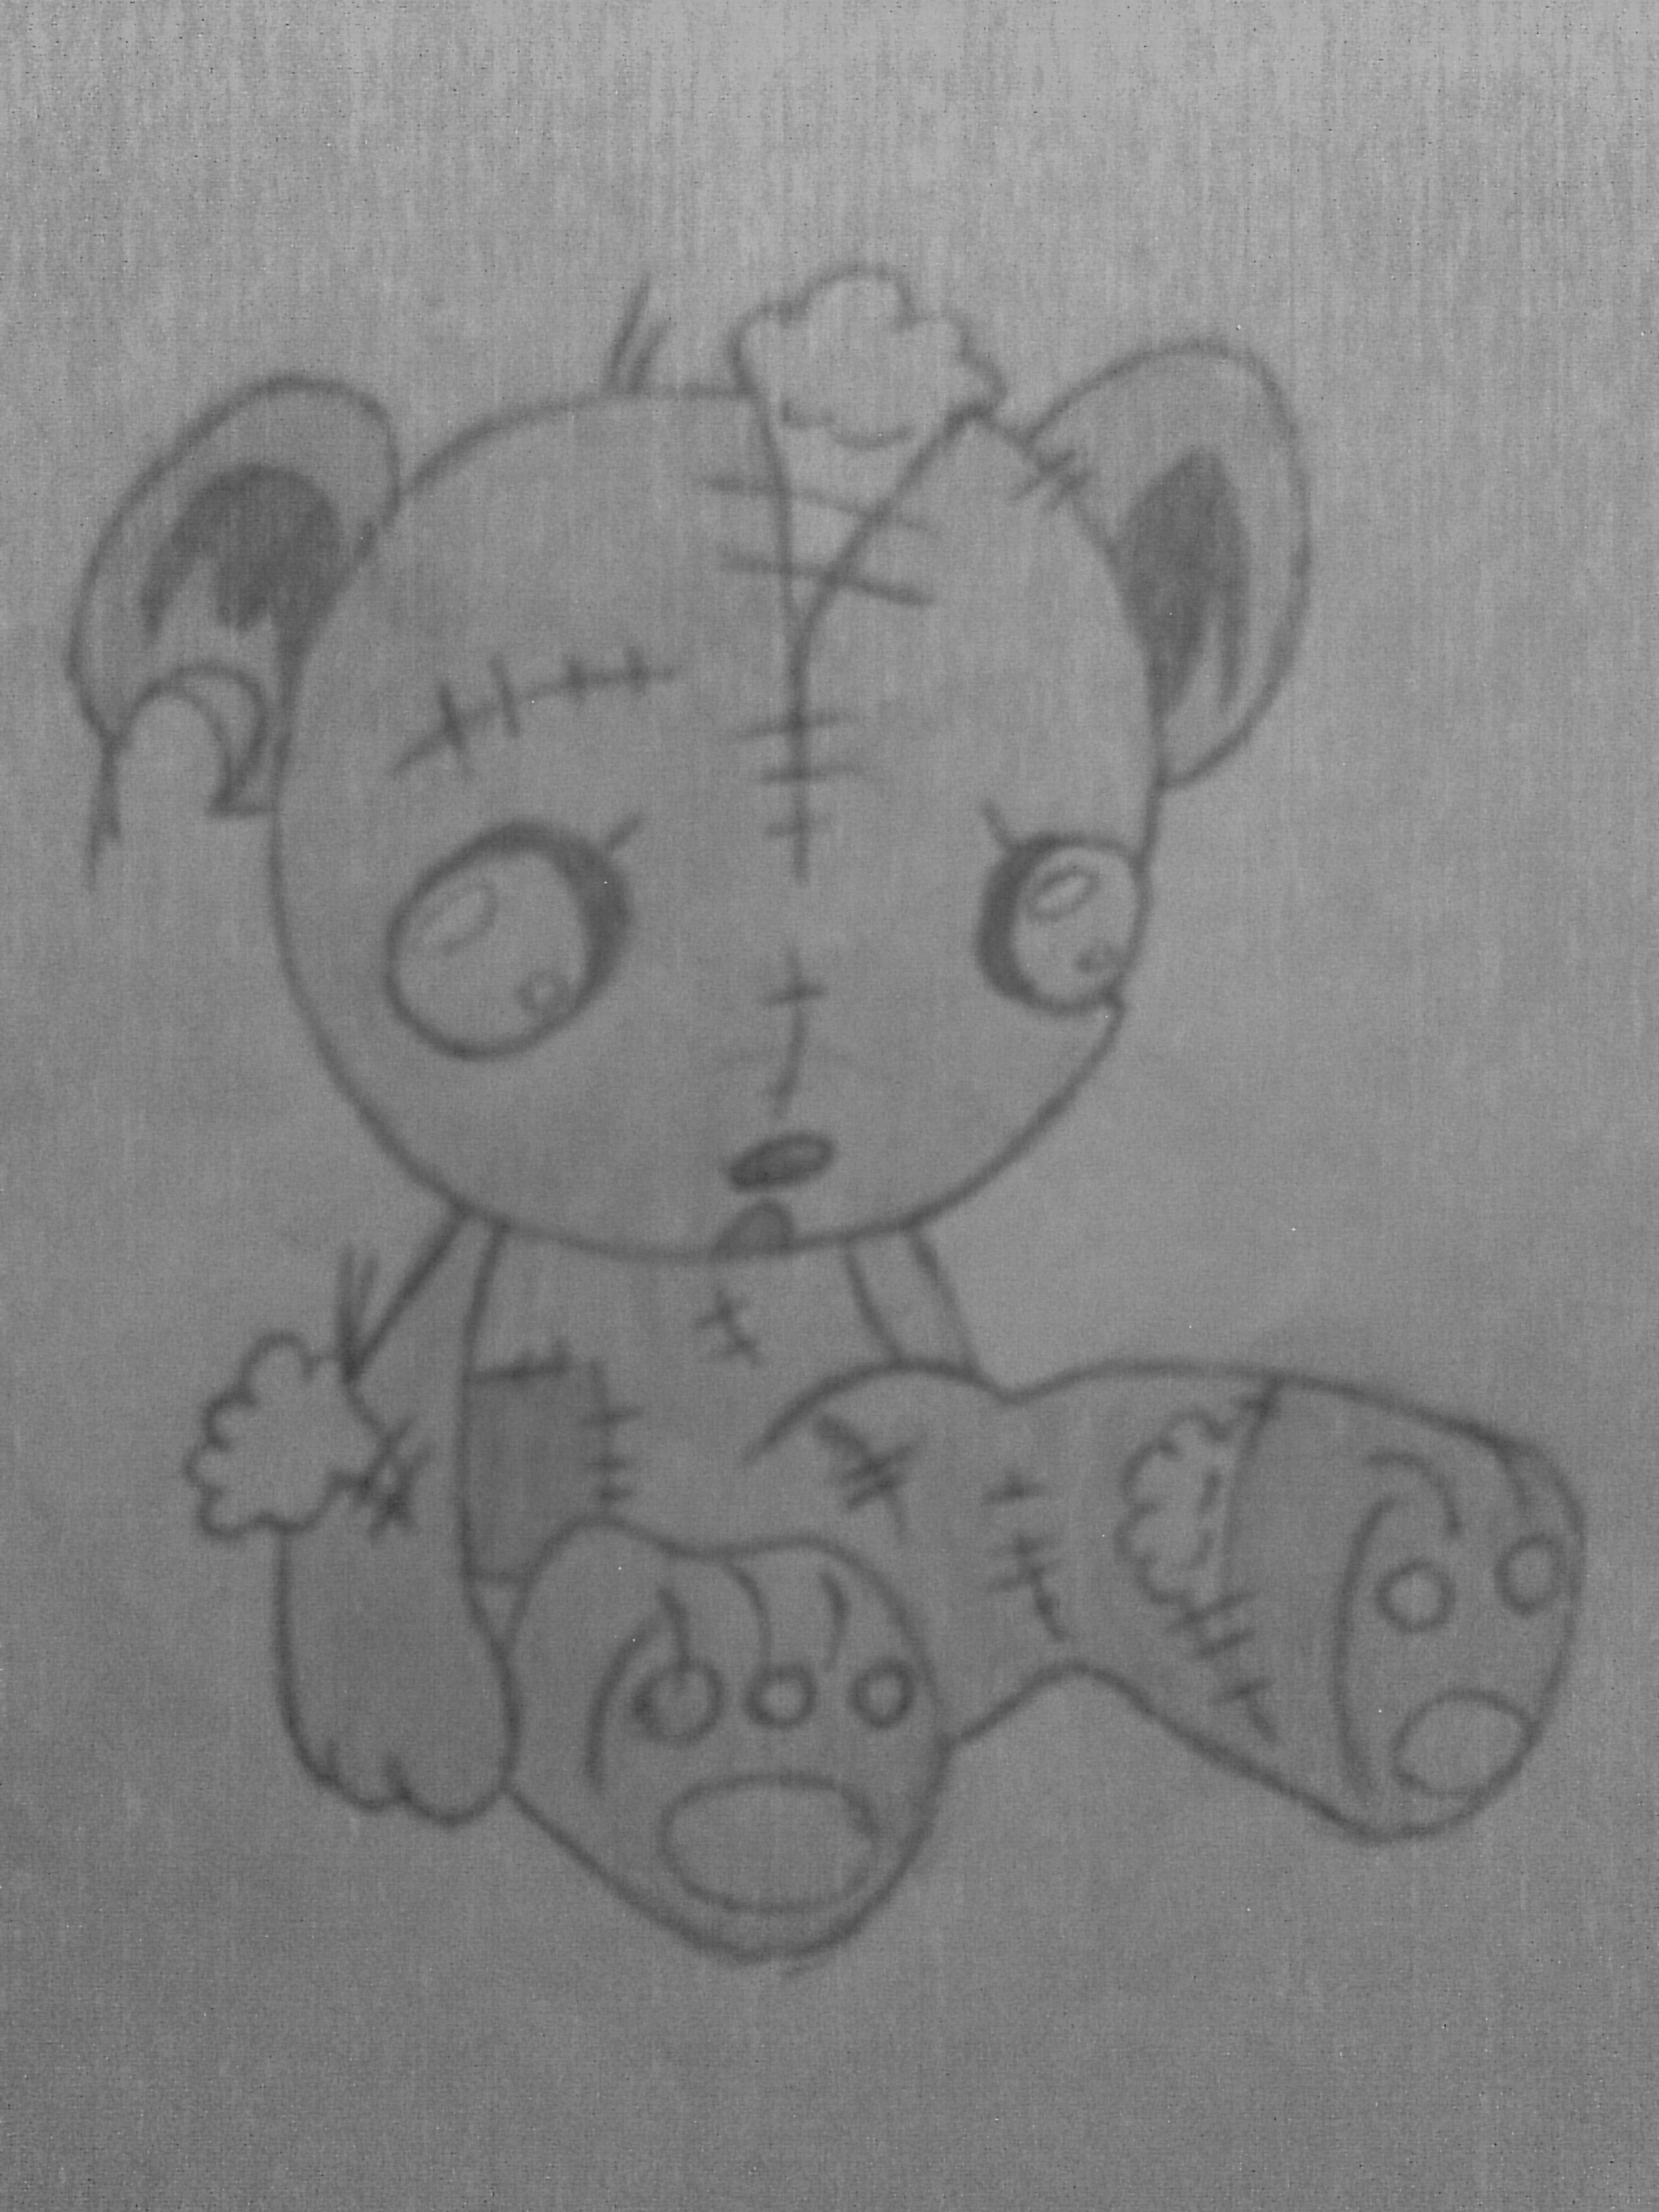 Sad Teddy Bear Drawing